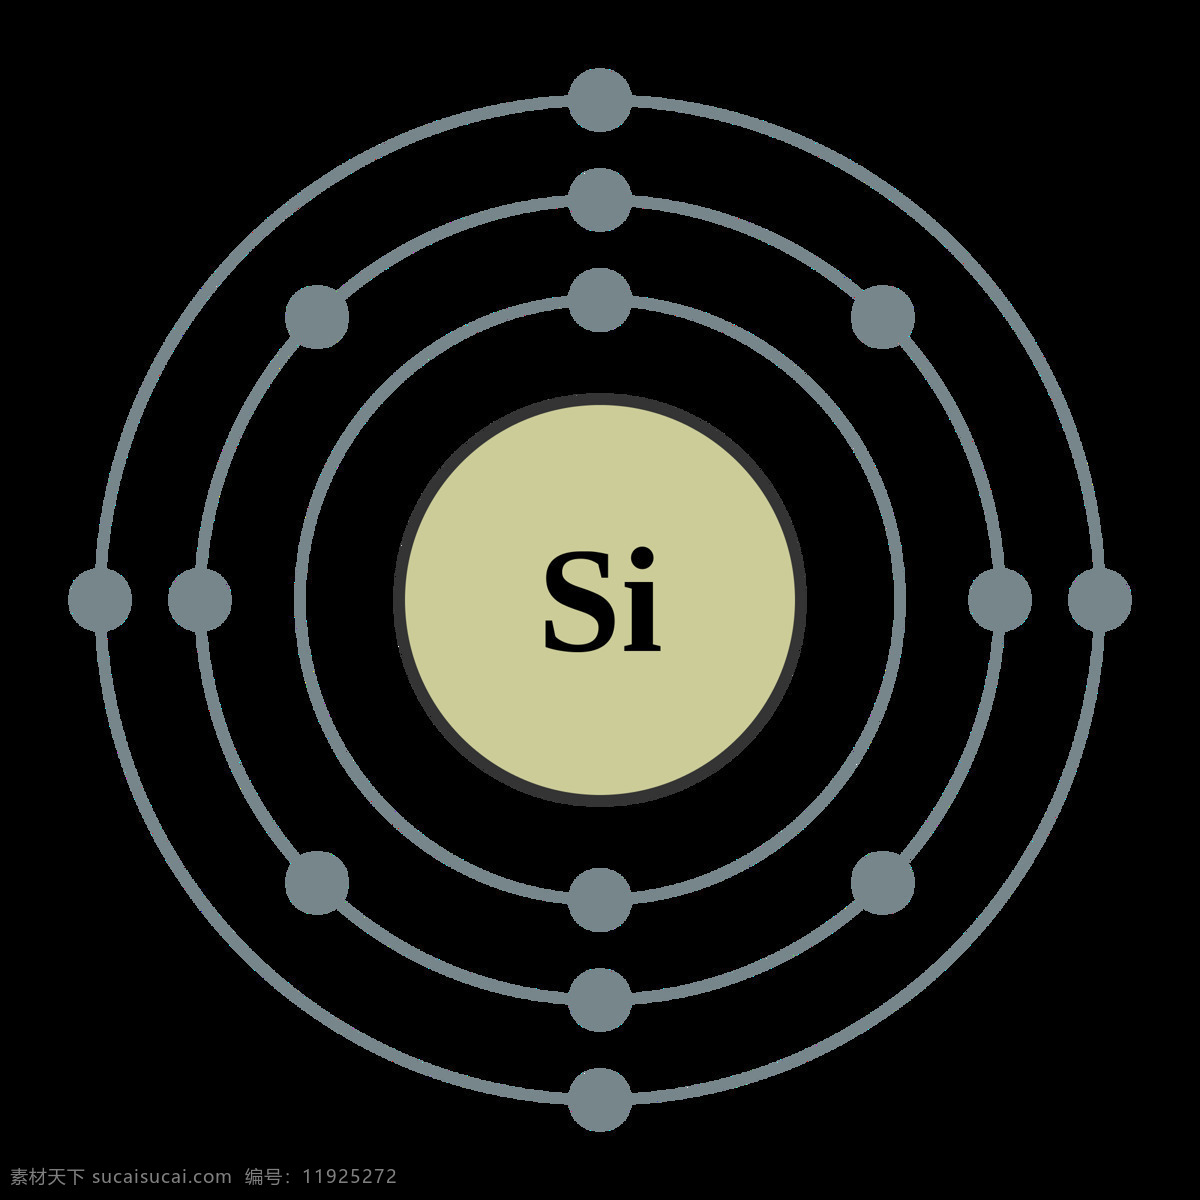 硅元素 分子式 分子 原子 原子核 核外电子 粒子 美白补水 分解 元素 显微镜 化学元素 结构 网状 分子结构 分子模型 分子演示 元素周期 科学研究 现代科技 原子结构 元素周期表